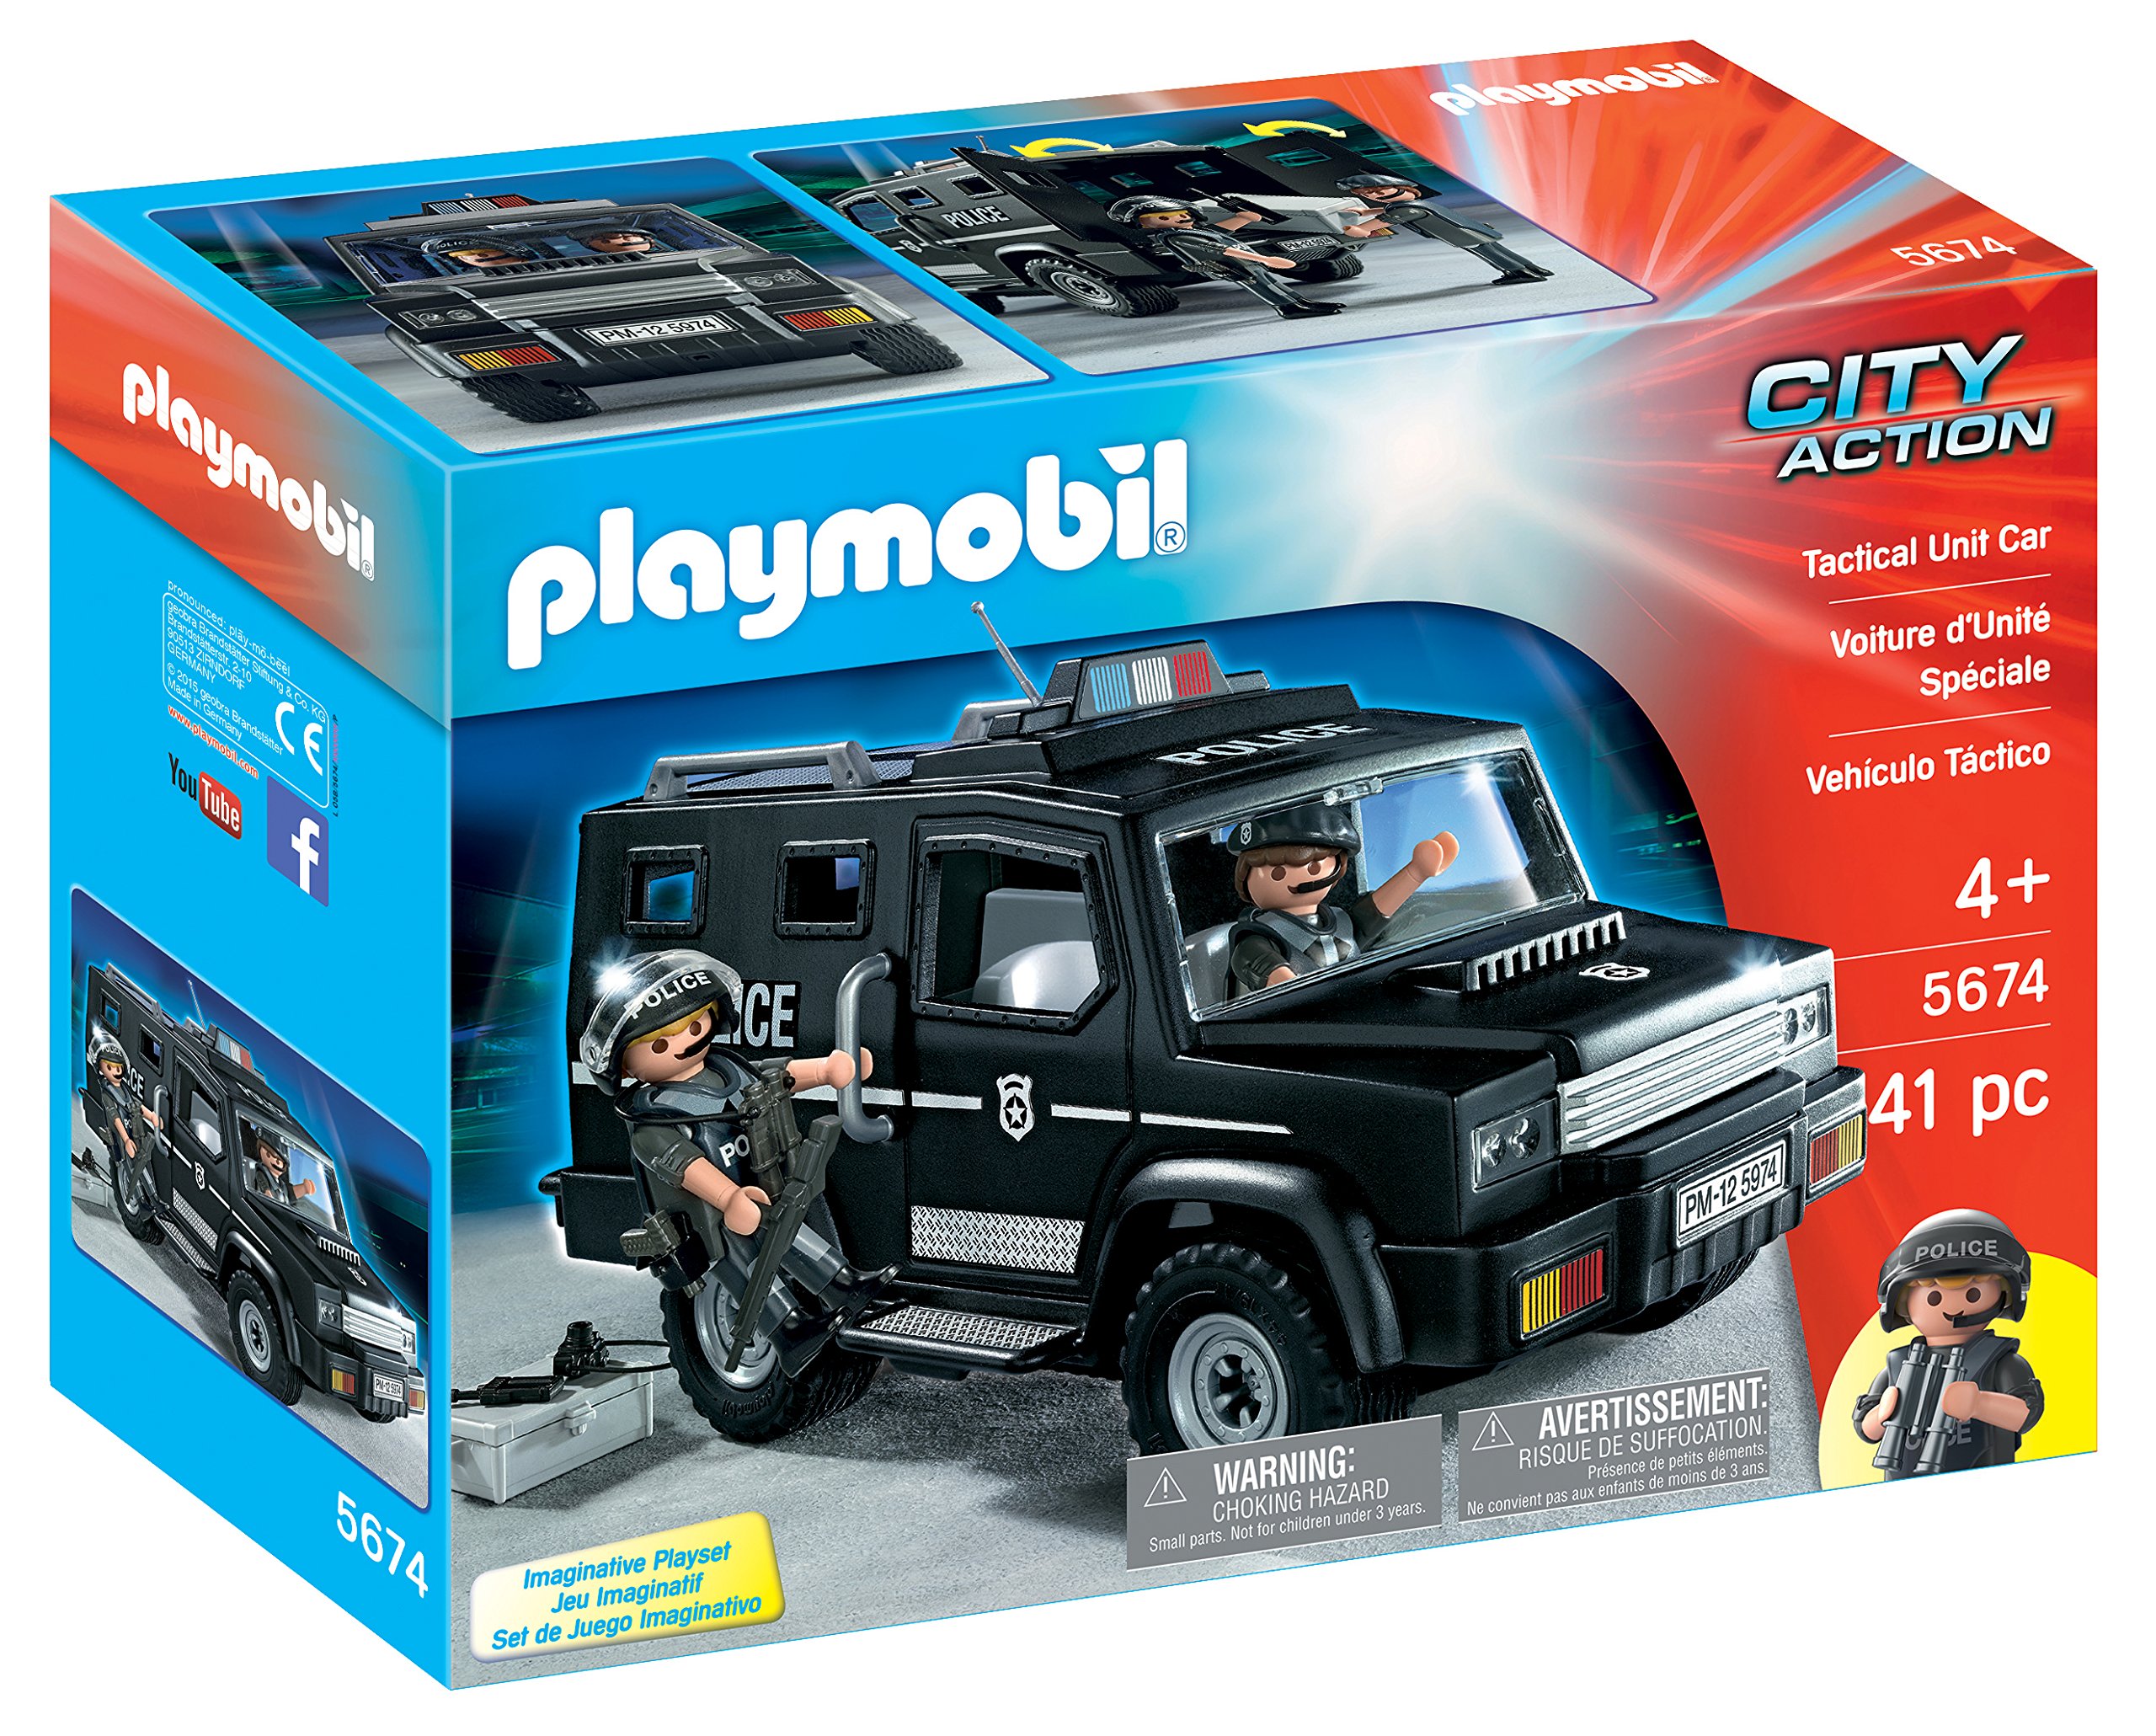 Playmobil Tactical Unit Police Car